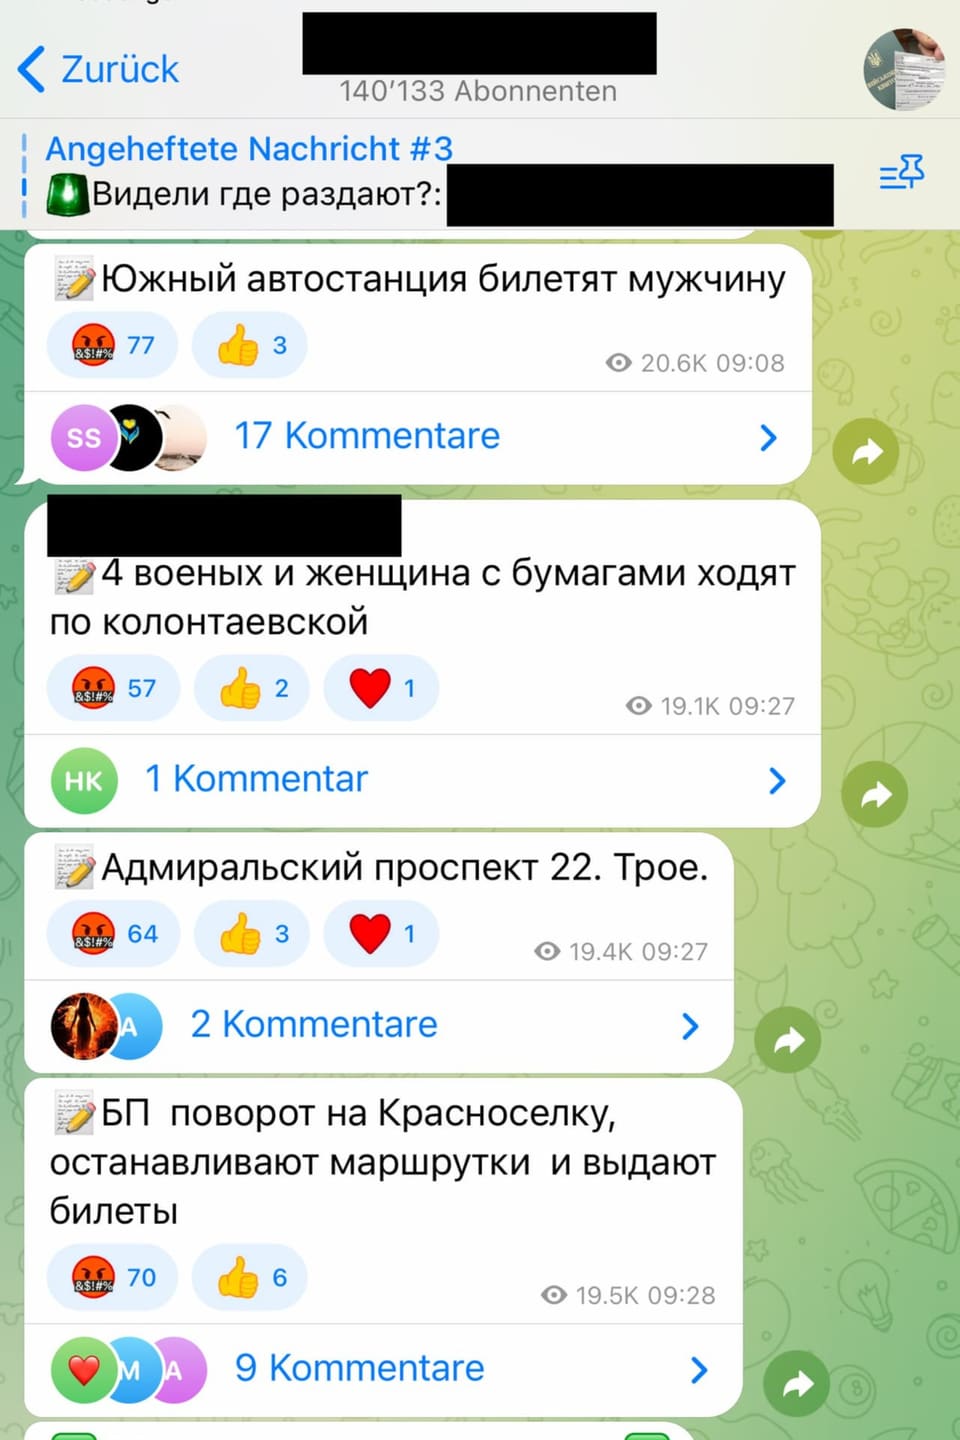 Ukrainer tauschen sich in einem Chat über den Aufenthaltsort von Mobilisierungstrupps aus (Screenshot).